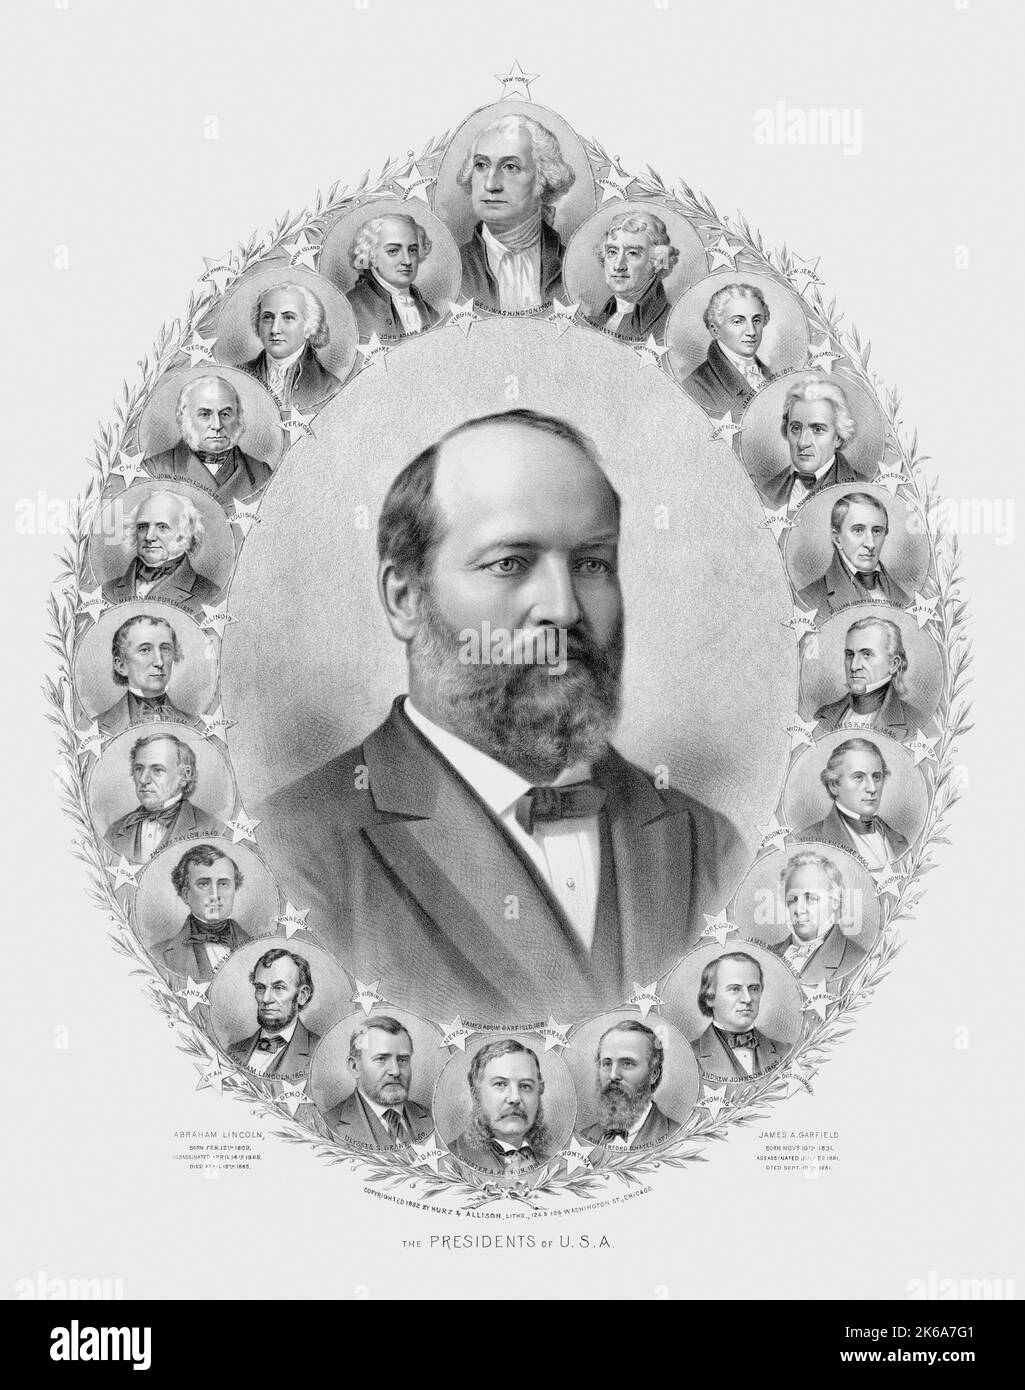 Imprimé du 19th siècle montrant divers présidents qui ont servi le pays, avec James Garfield au milieu. Banque D'Images